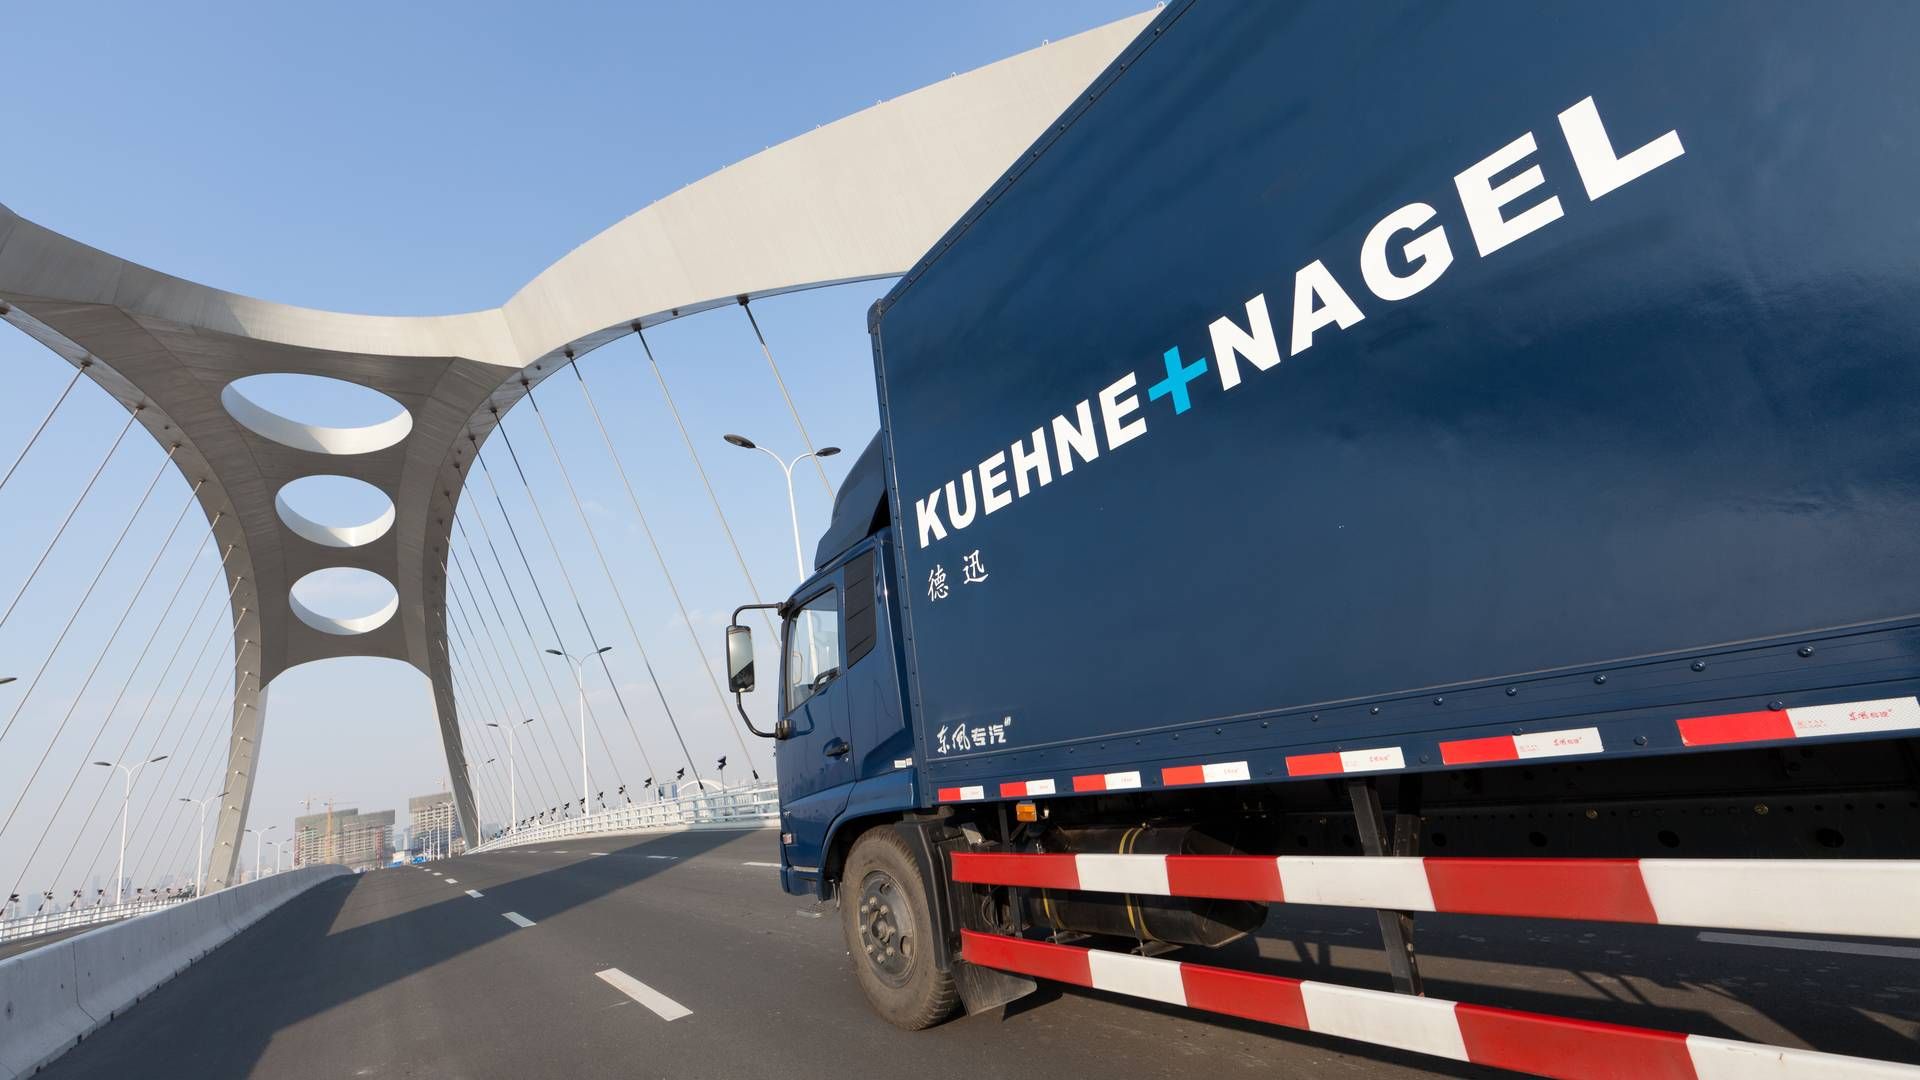 Kuehne+Nagel lagde 160 pct. til driftsindtjeningen i løbet af årets første tre måneder. | Foto: PR / Kuehne + Nagel